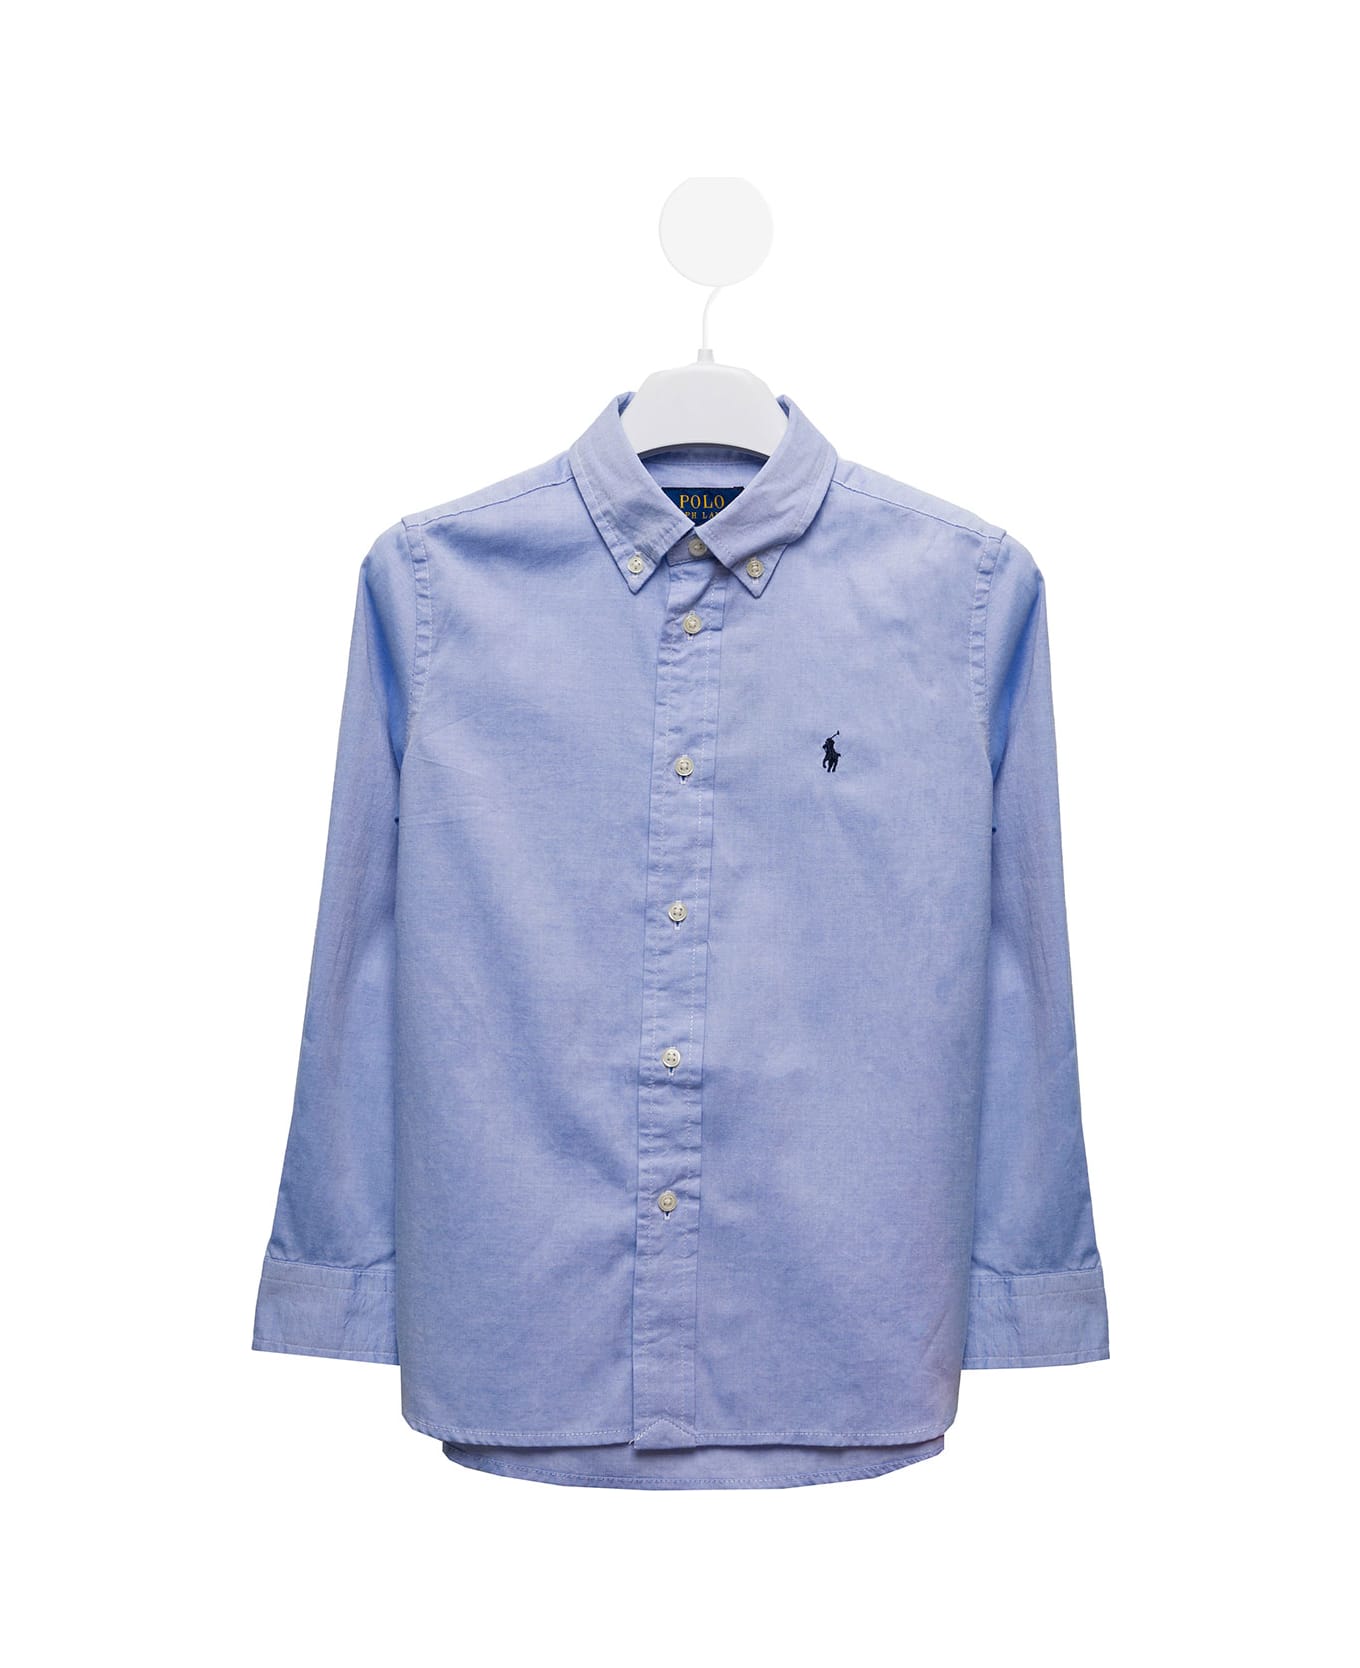 Polo Ralph Lauren Light Blue Cotton Poplin Shirt With Logo Polo Ralph Lauren Kids Boy - Blu シャツ